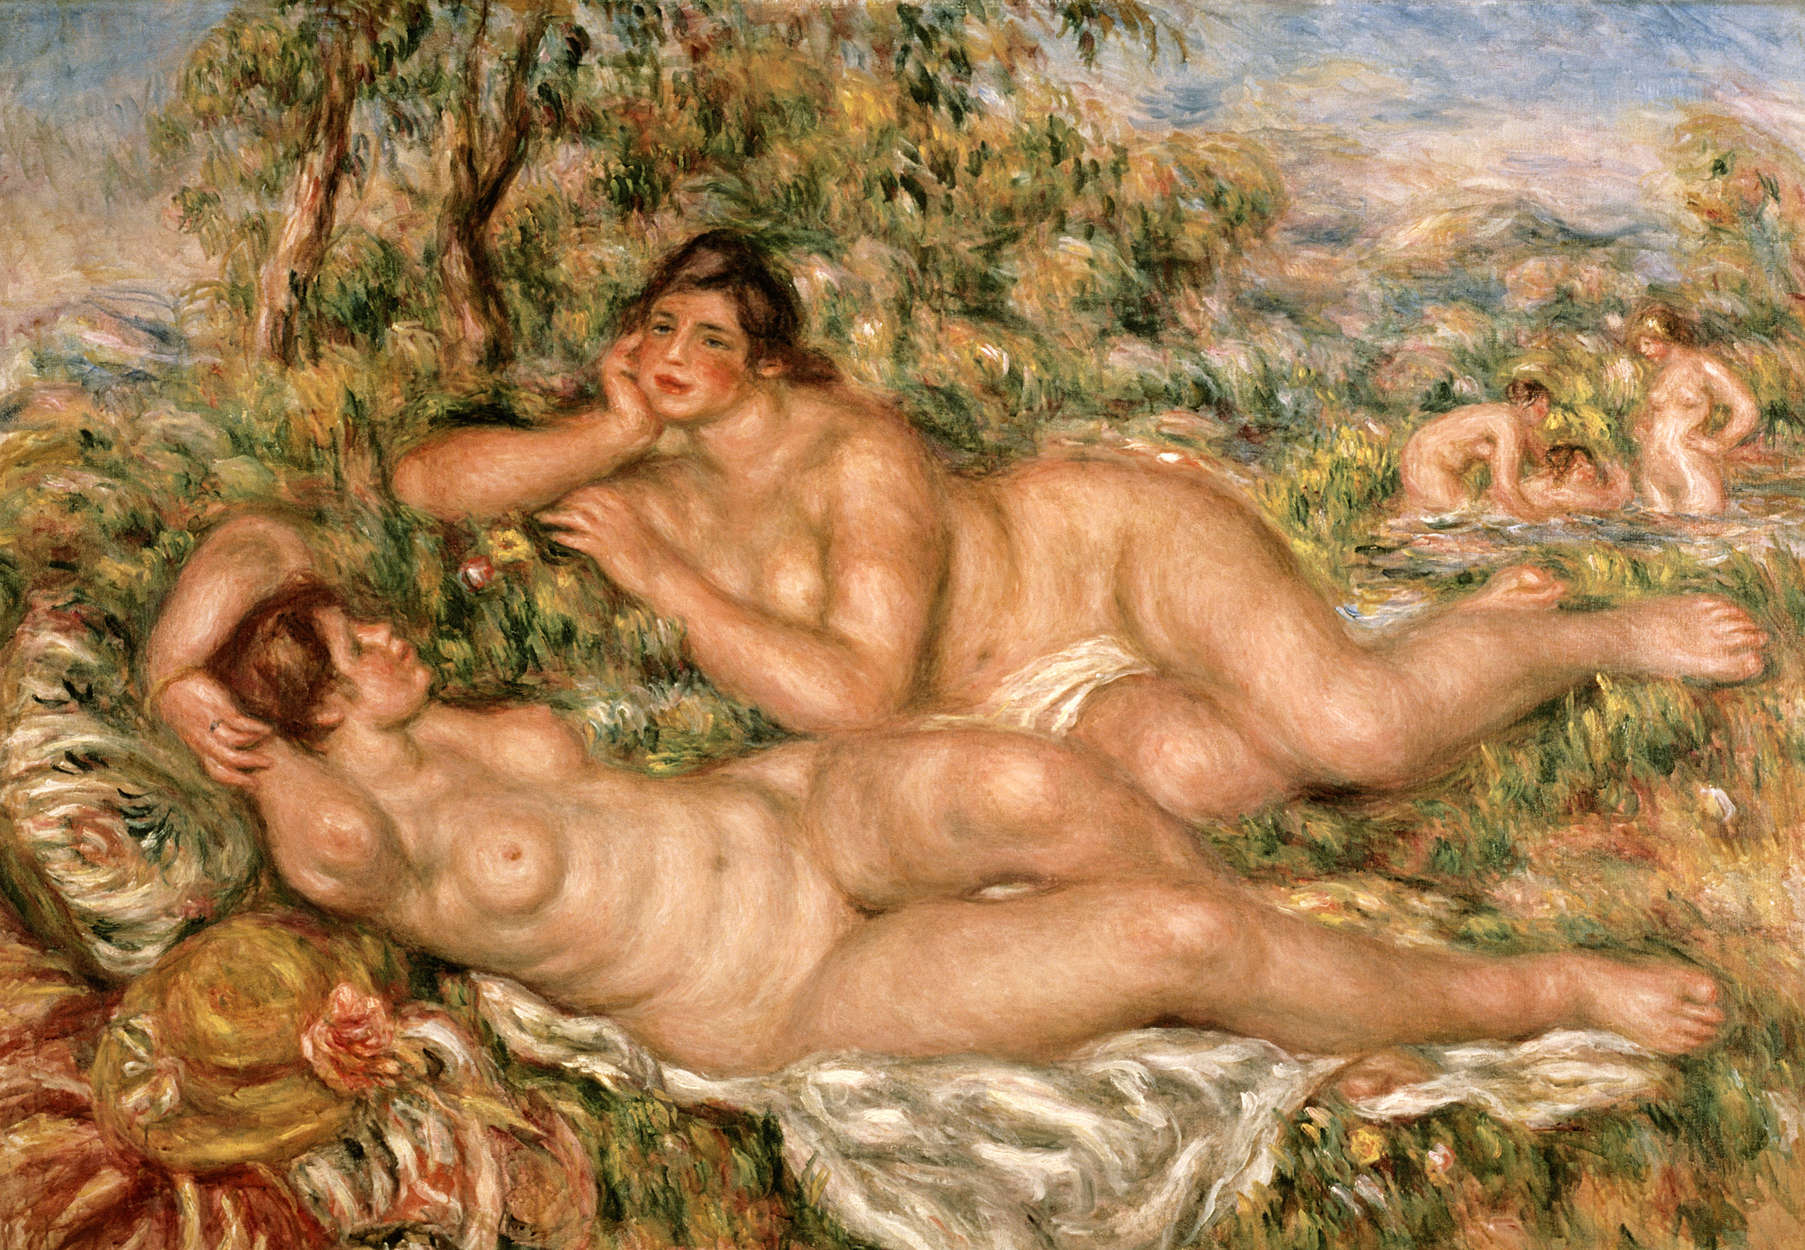             Papier peint panoramique "Baigneuse" de Pierre Auguste Renoir
        